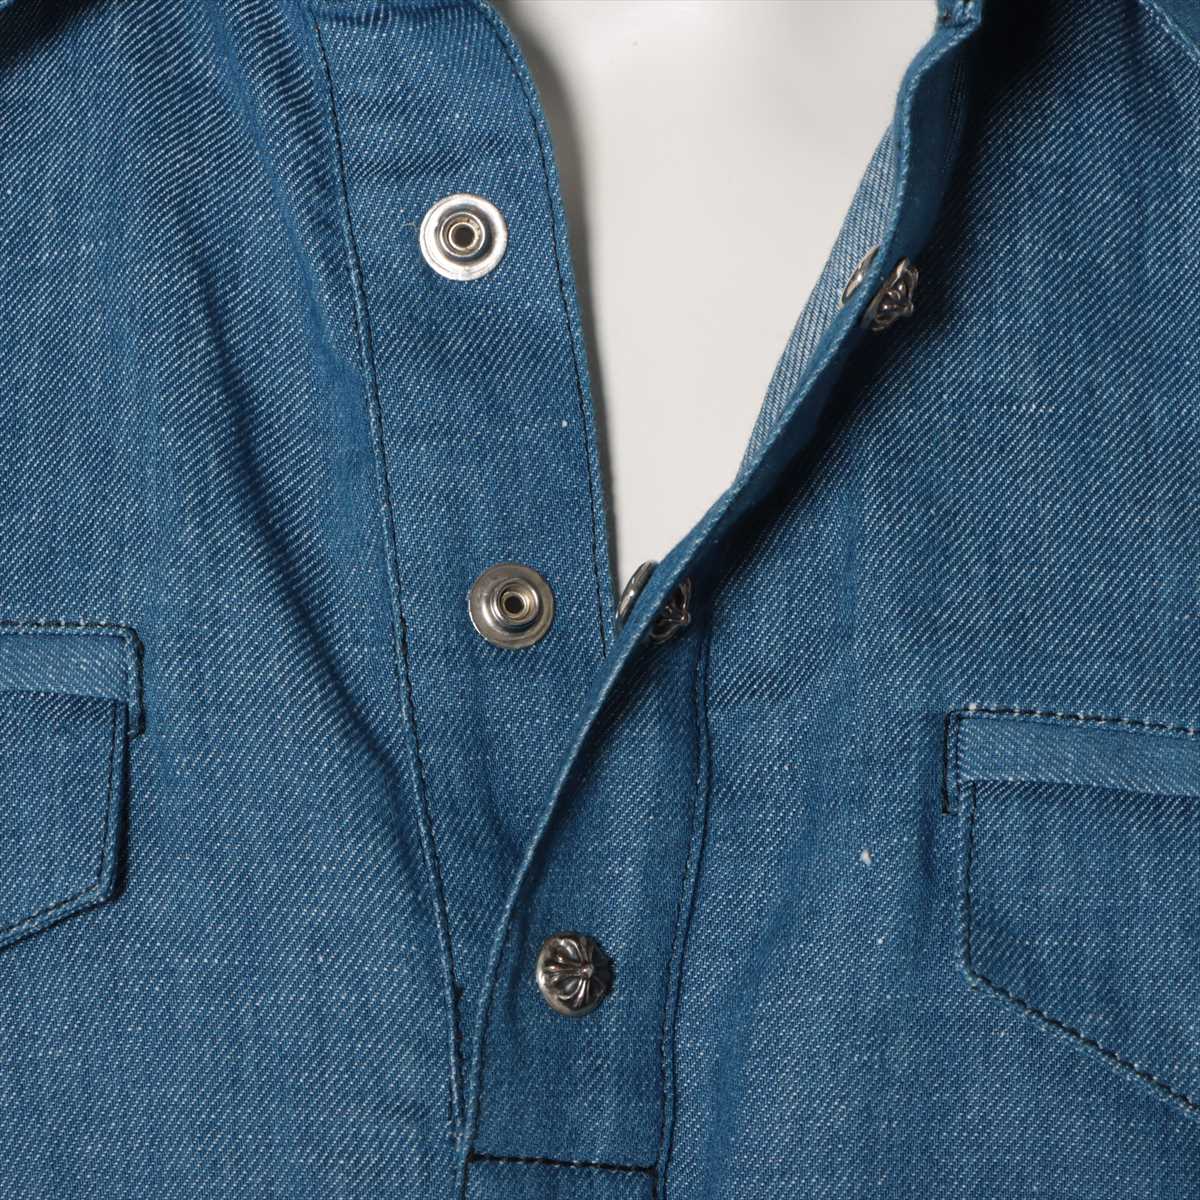 Chrome Hearts Cross button Denim shirt Cotton & linen S JVP Short sleeves